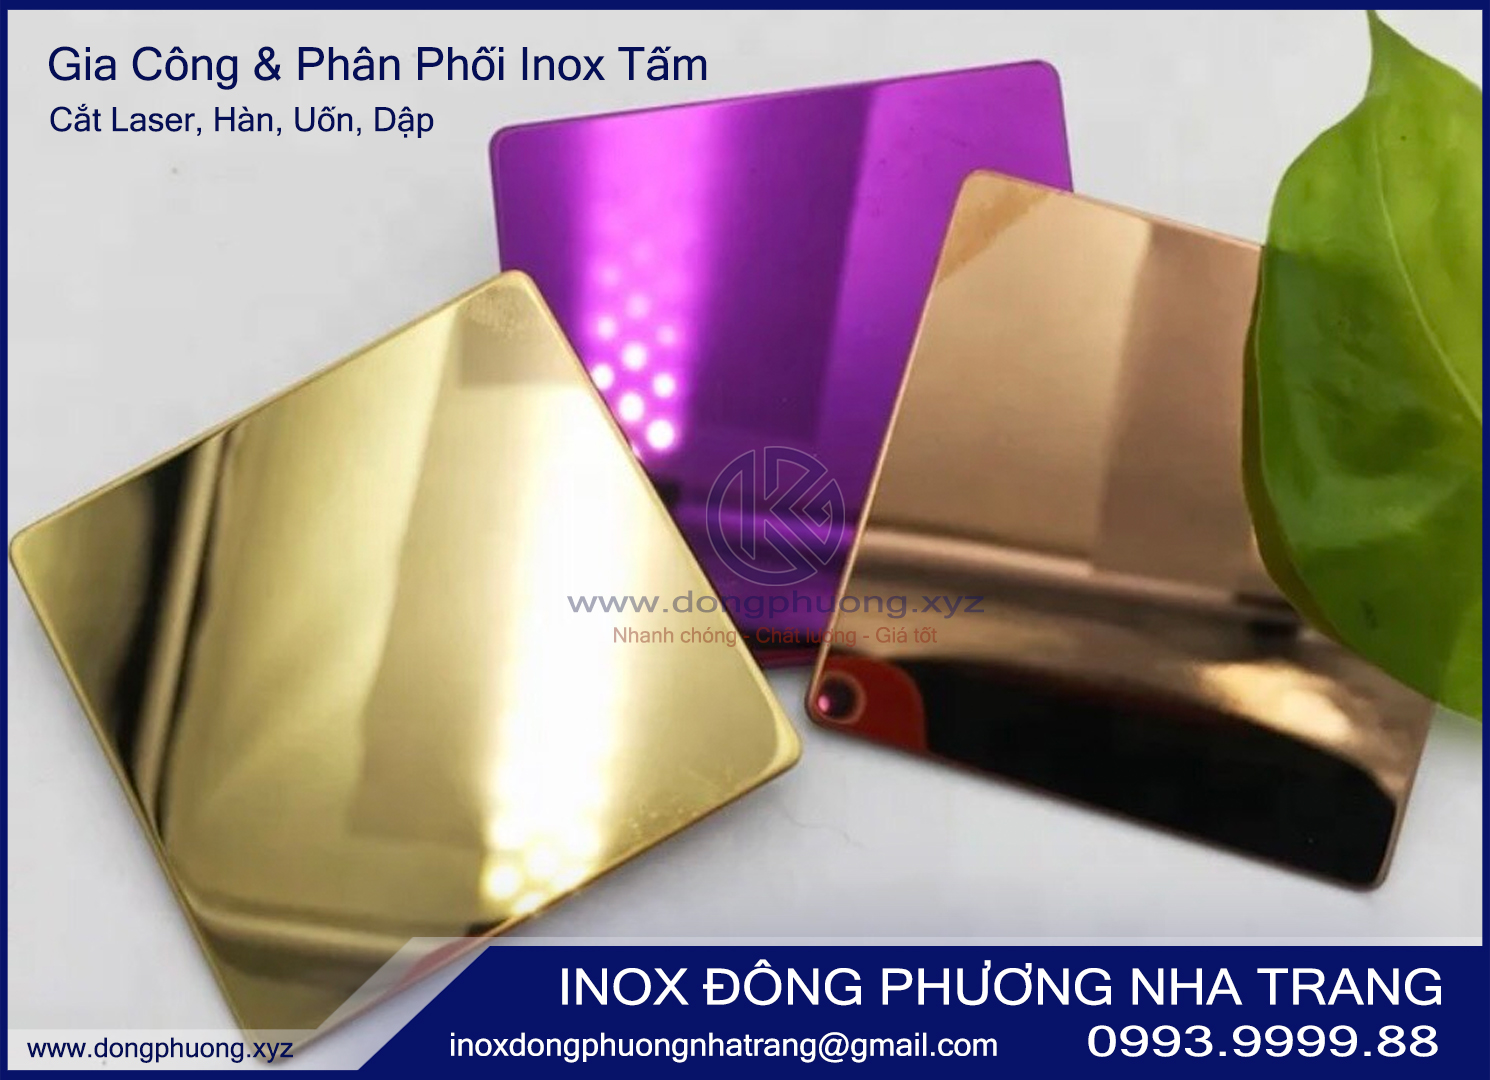 Inox vàng gương - vật liệu cao cấp trong sản xuất công nghiệp